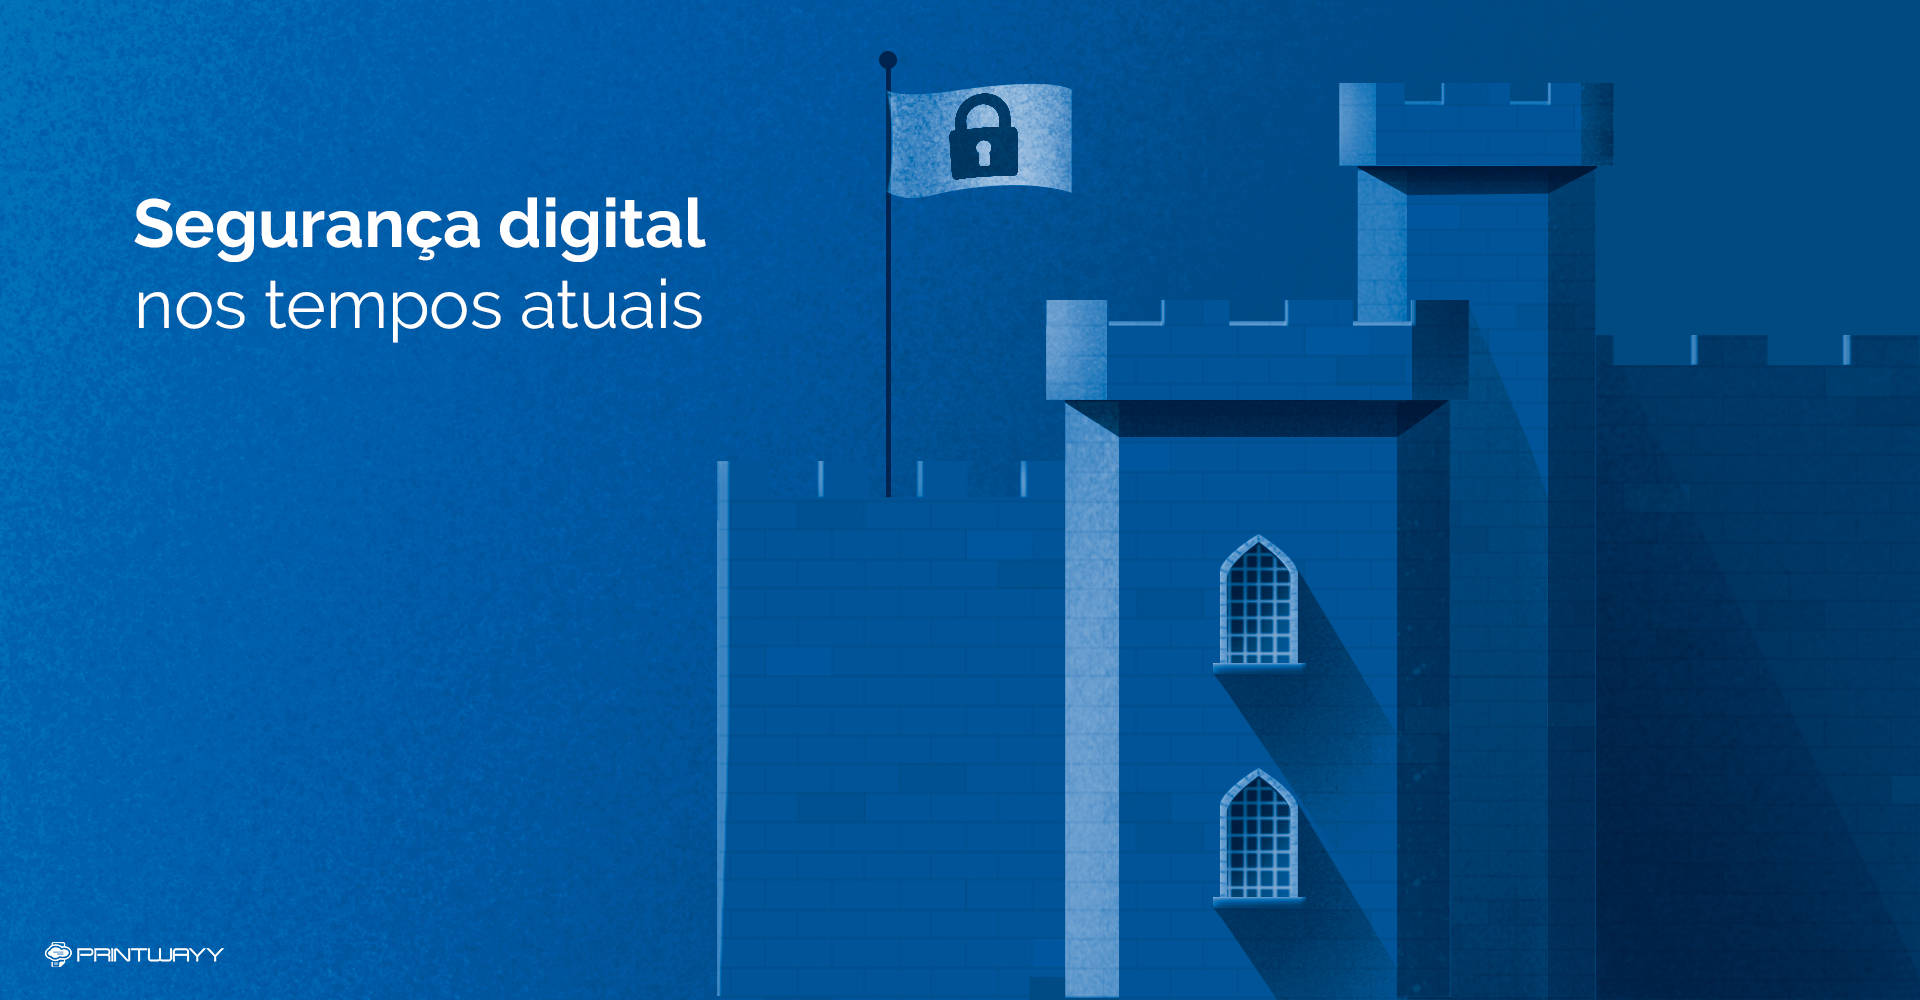 Ilustração de um forte/castelo medieval simbolizando a segurança digital.